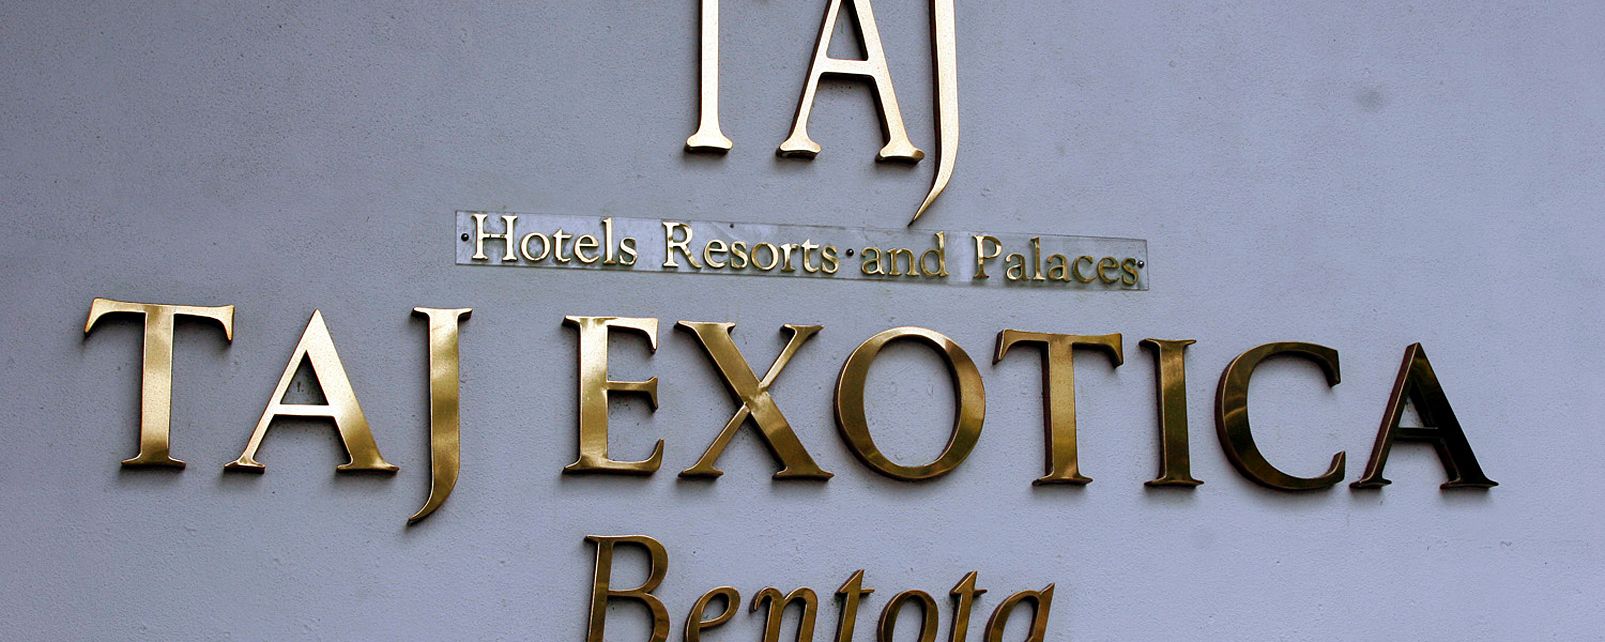 Hôtel Taj Exotica